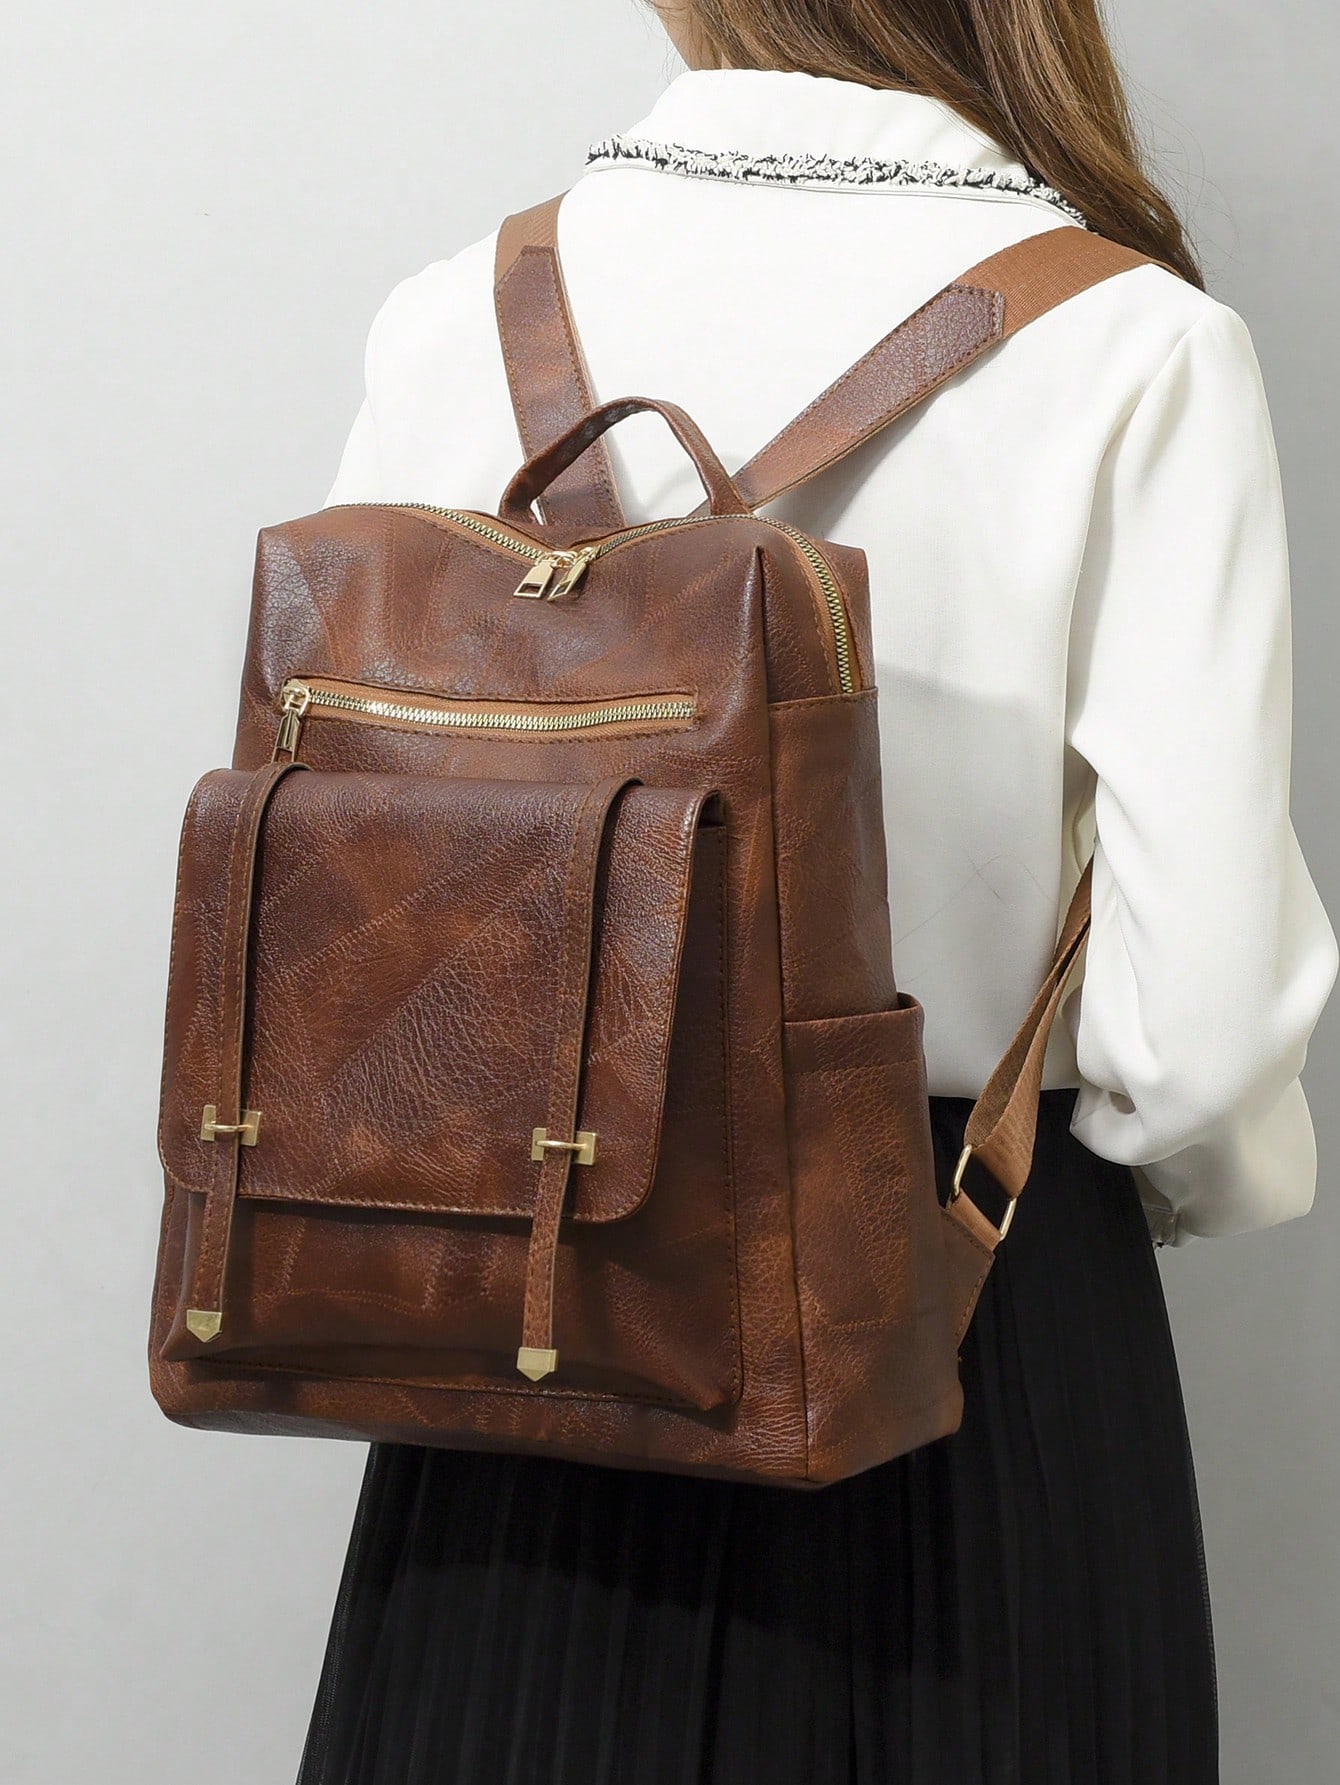 мясник и ножи мясницкий незаменимый безопасный уютный плед рюкзак 17 дюймов винтажный графический винтажный рюкзак для пикников Модный простой рюкзак в деловом стиле, коричневый